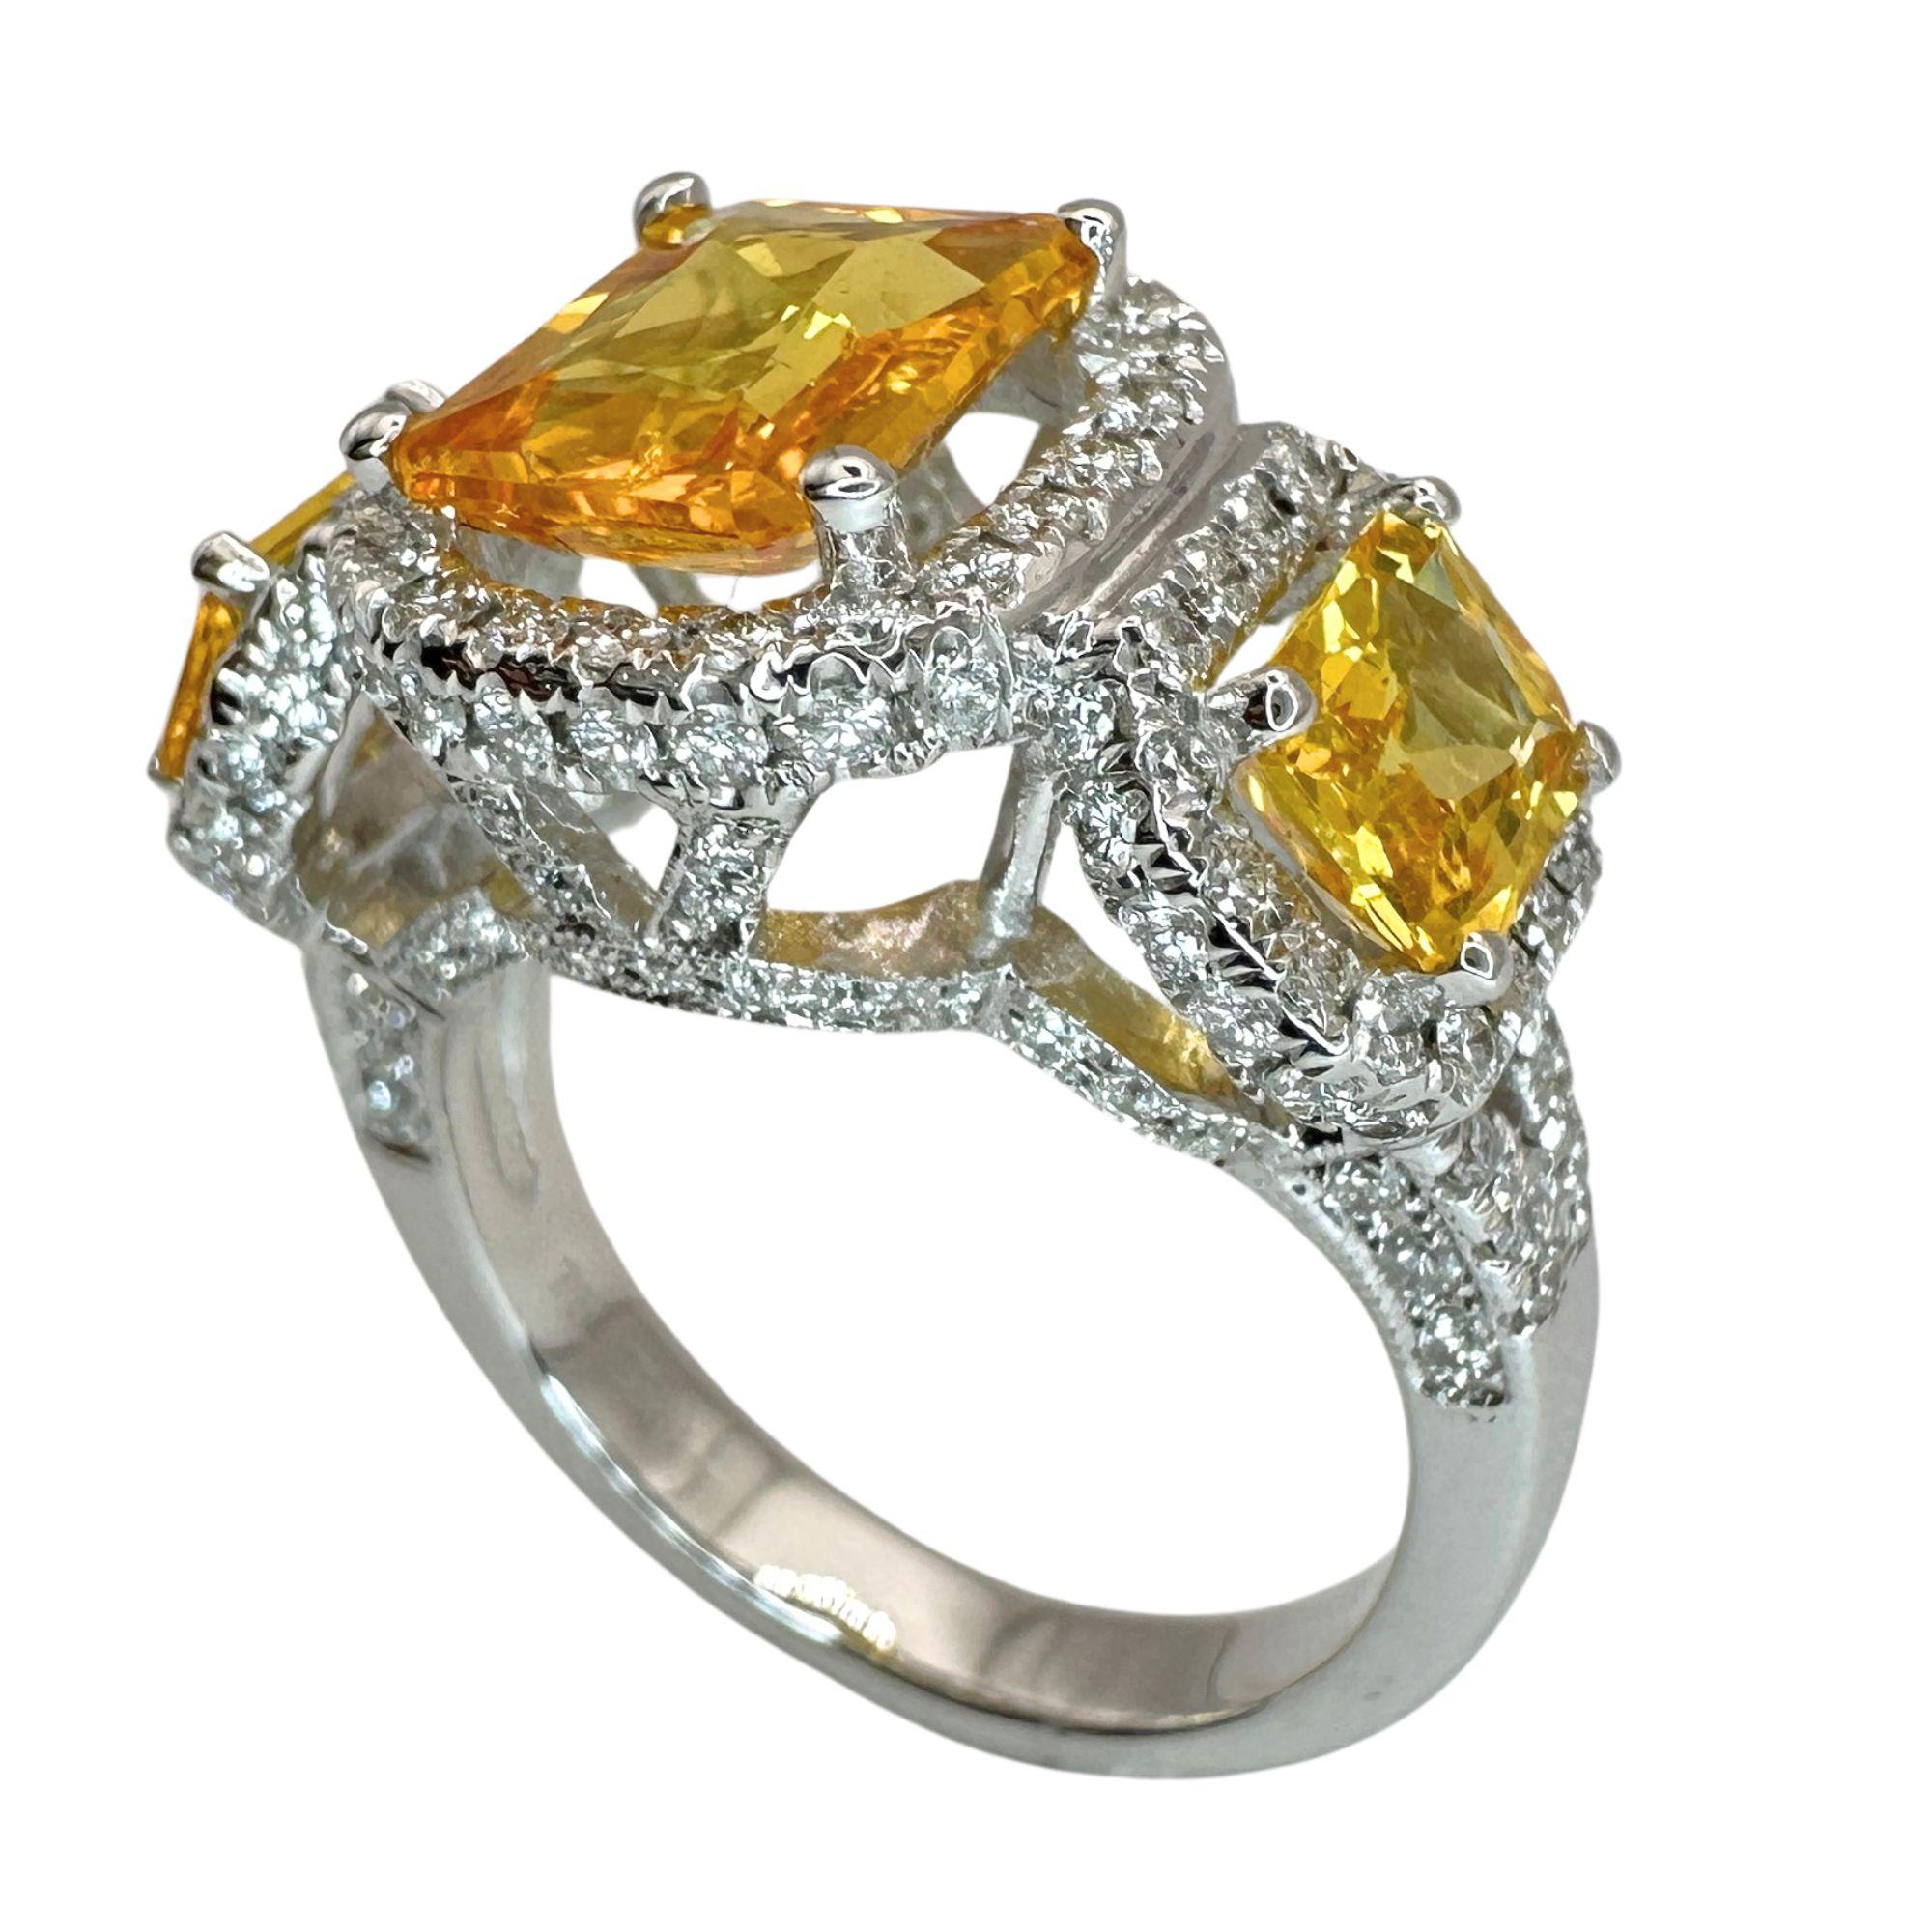 Erhöhen Sie Ihren Stil mit unserem exquisiten Dreisteinring aus 18 Karat Diamant und gelbem Saphir. Mit 0,97 Karat funkelnden Diamanten und 3,95 Karat leuchtend gelben Saphiren ist dieser Ring ein wahres Fest des Luxus und der Eleganz. In gutem